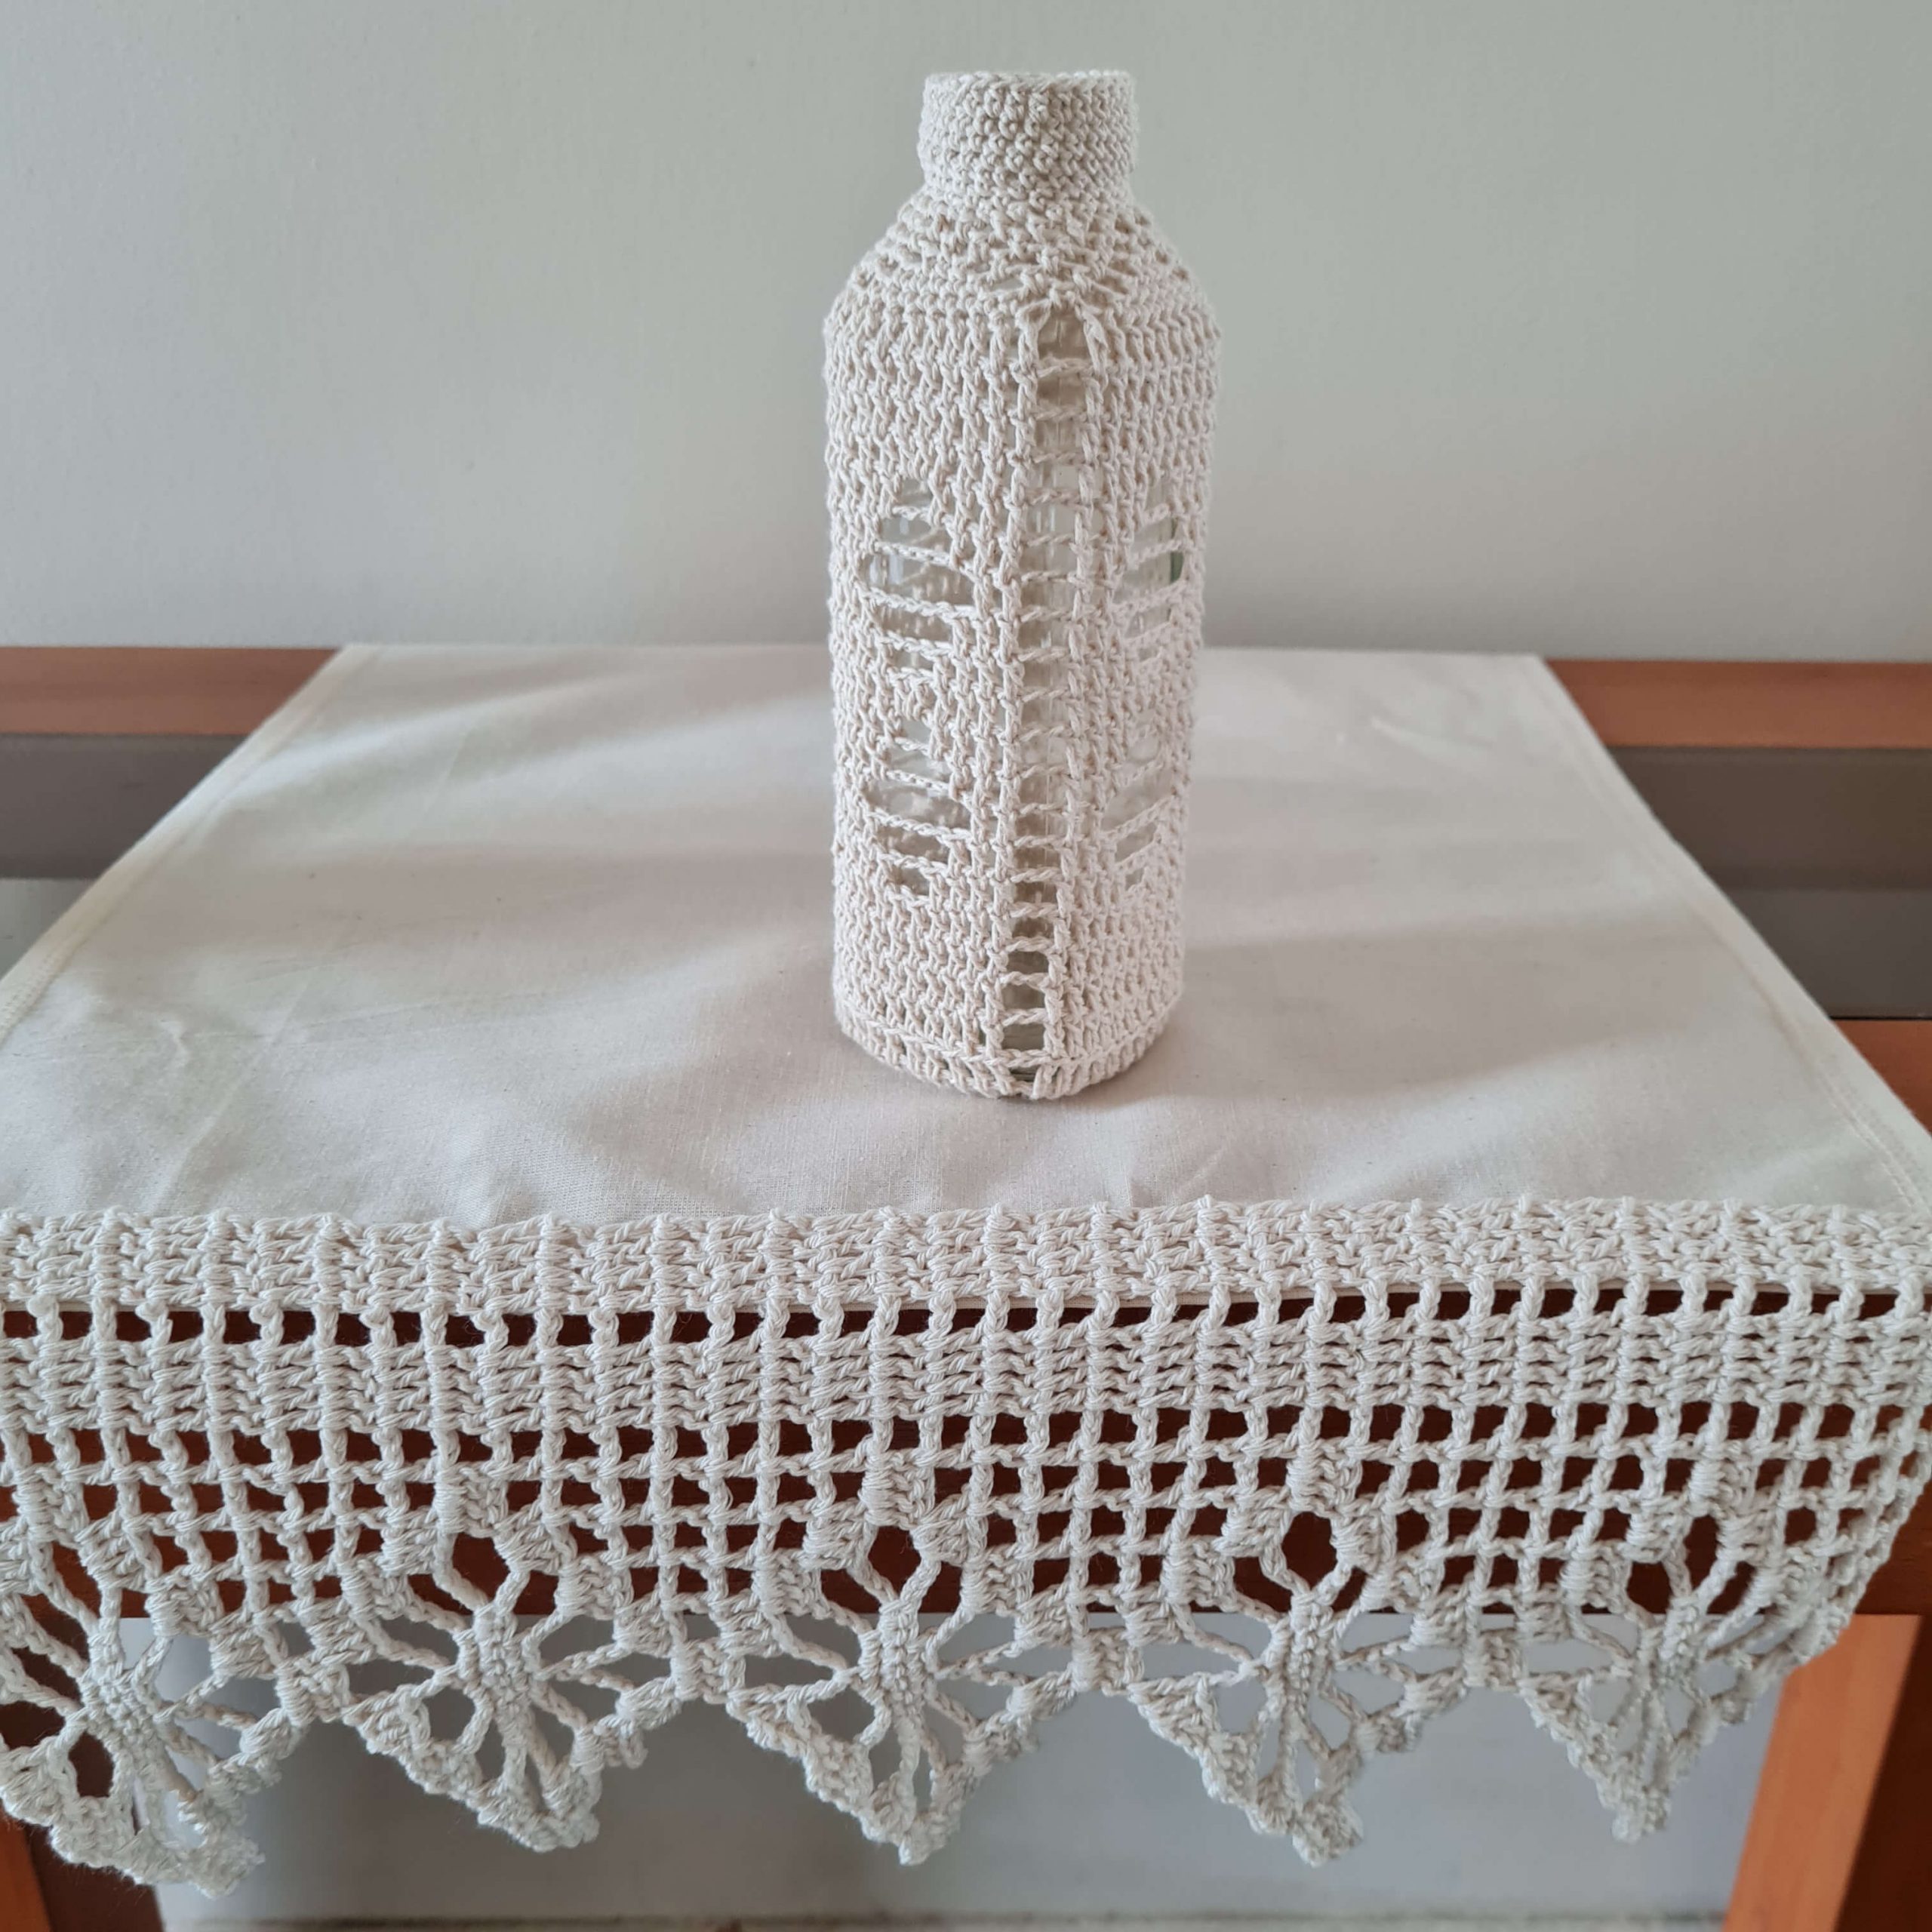 Botella decorada con tejido a crochet 1